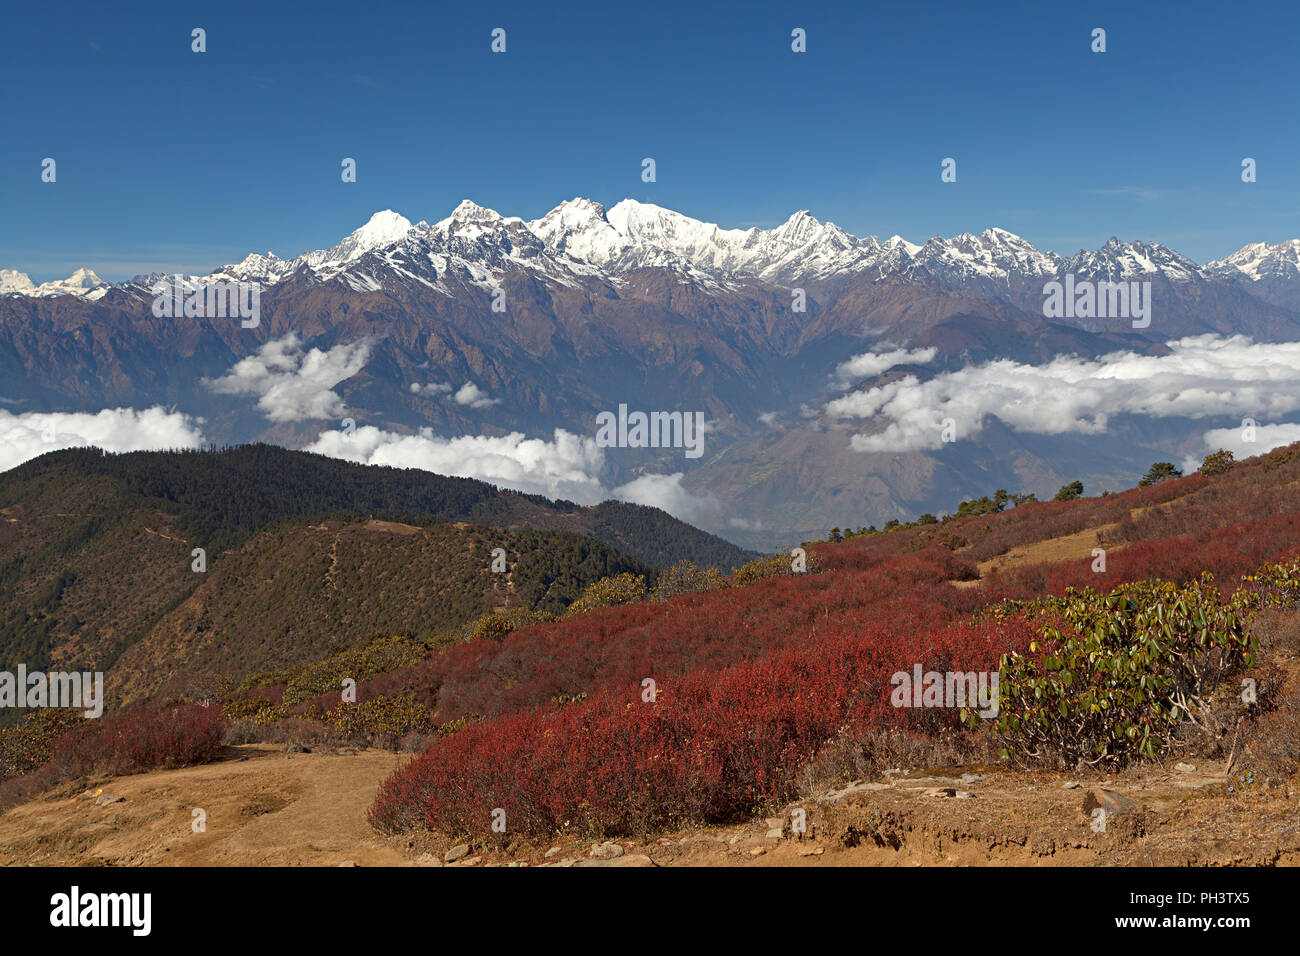 Grand montagnes enneigées en arrière-plan avec la végétation rouge au premier plan. Massif de l'Himalaya. Ganesh Himal et Manaslu Himal mountain range Banque D'Images